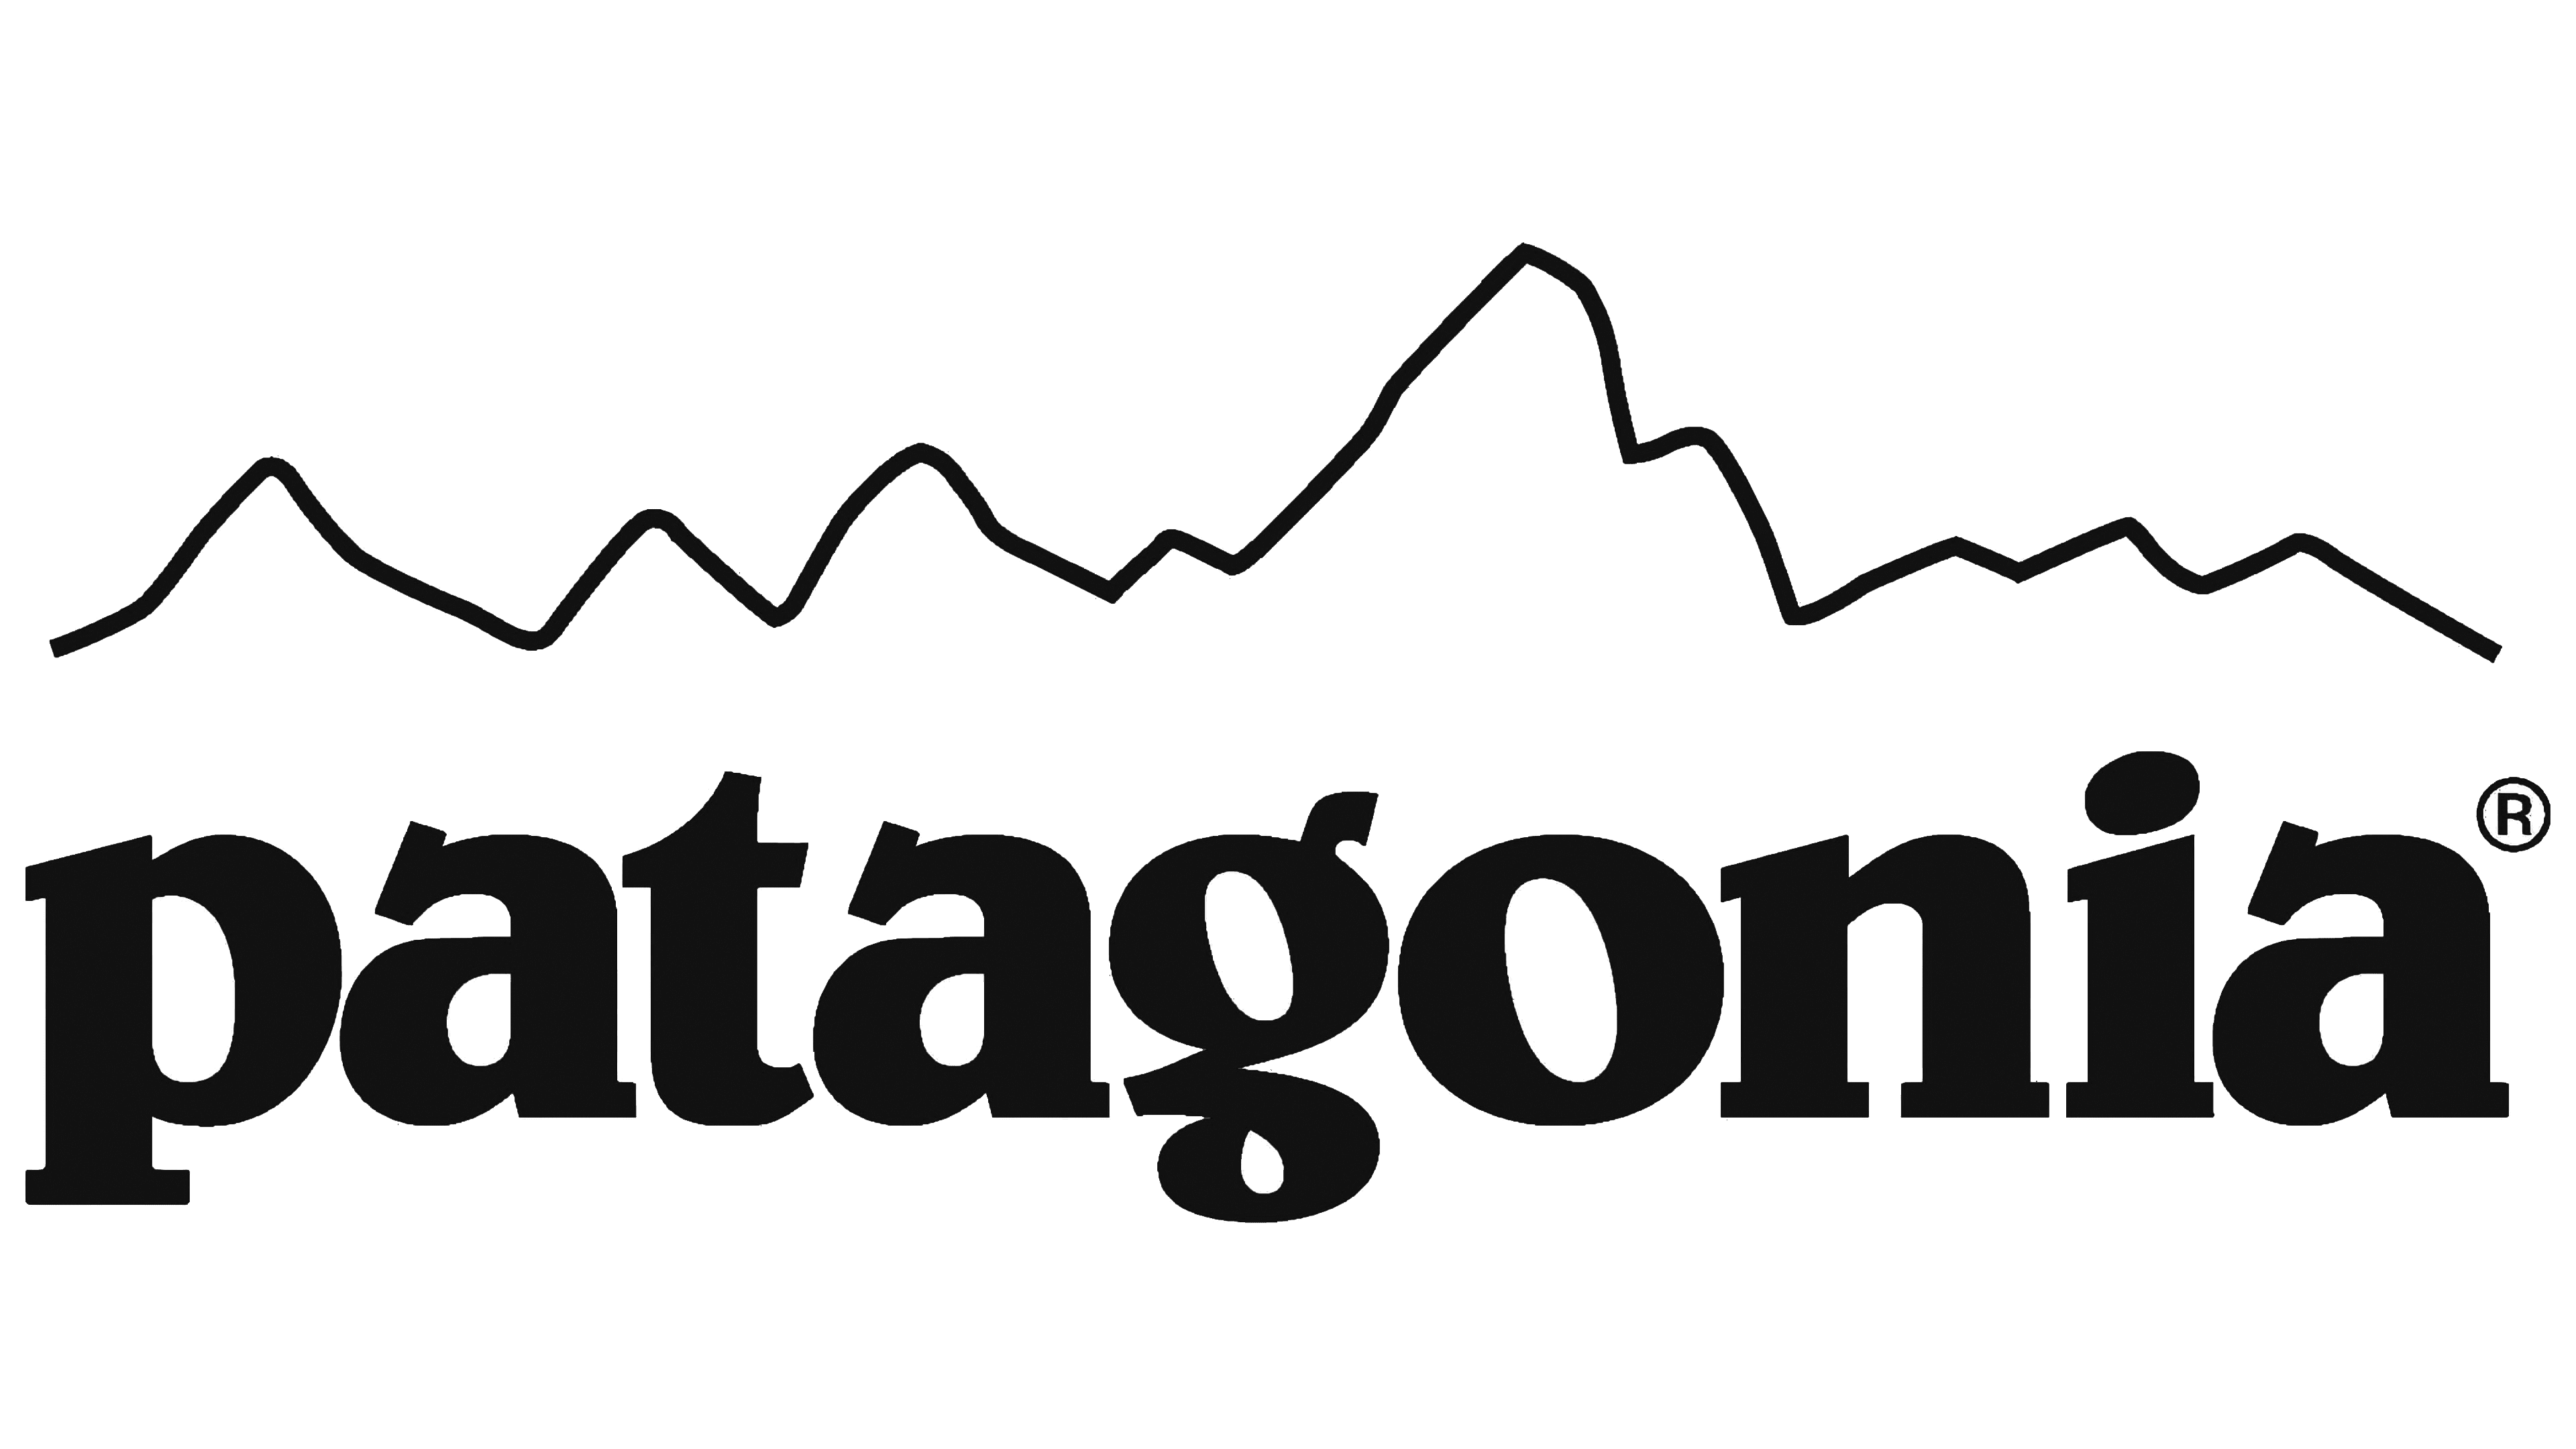 Patagonia-Emblem